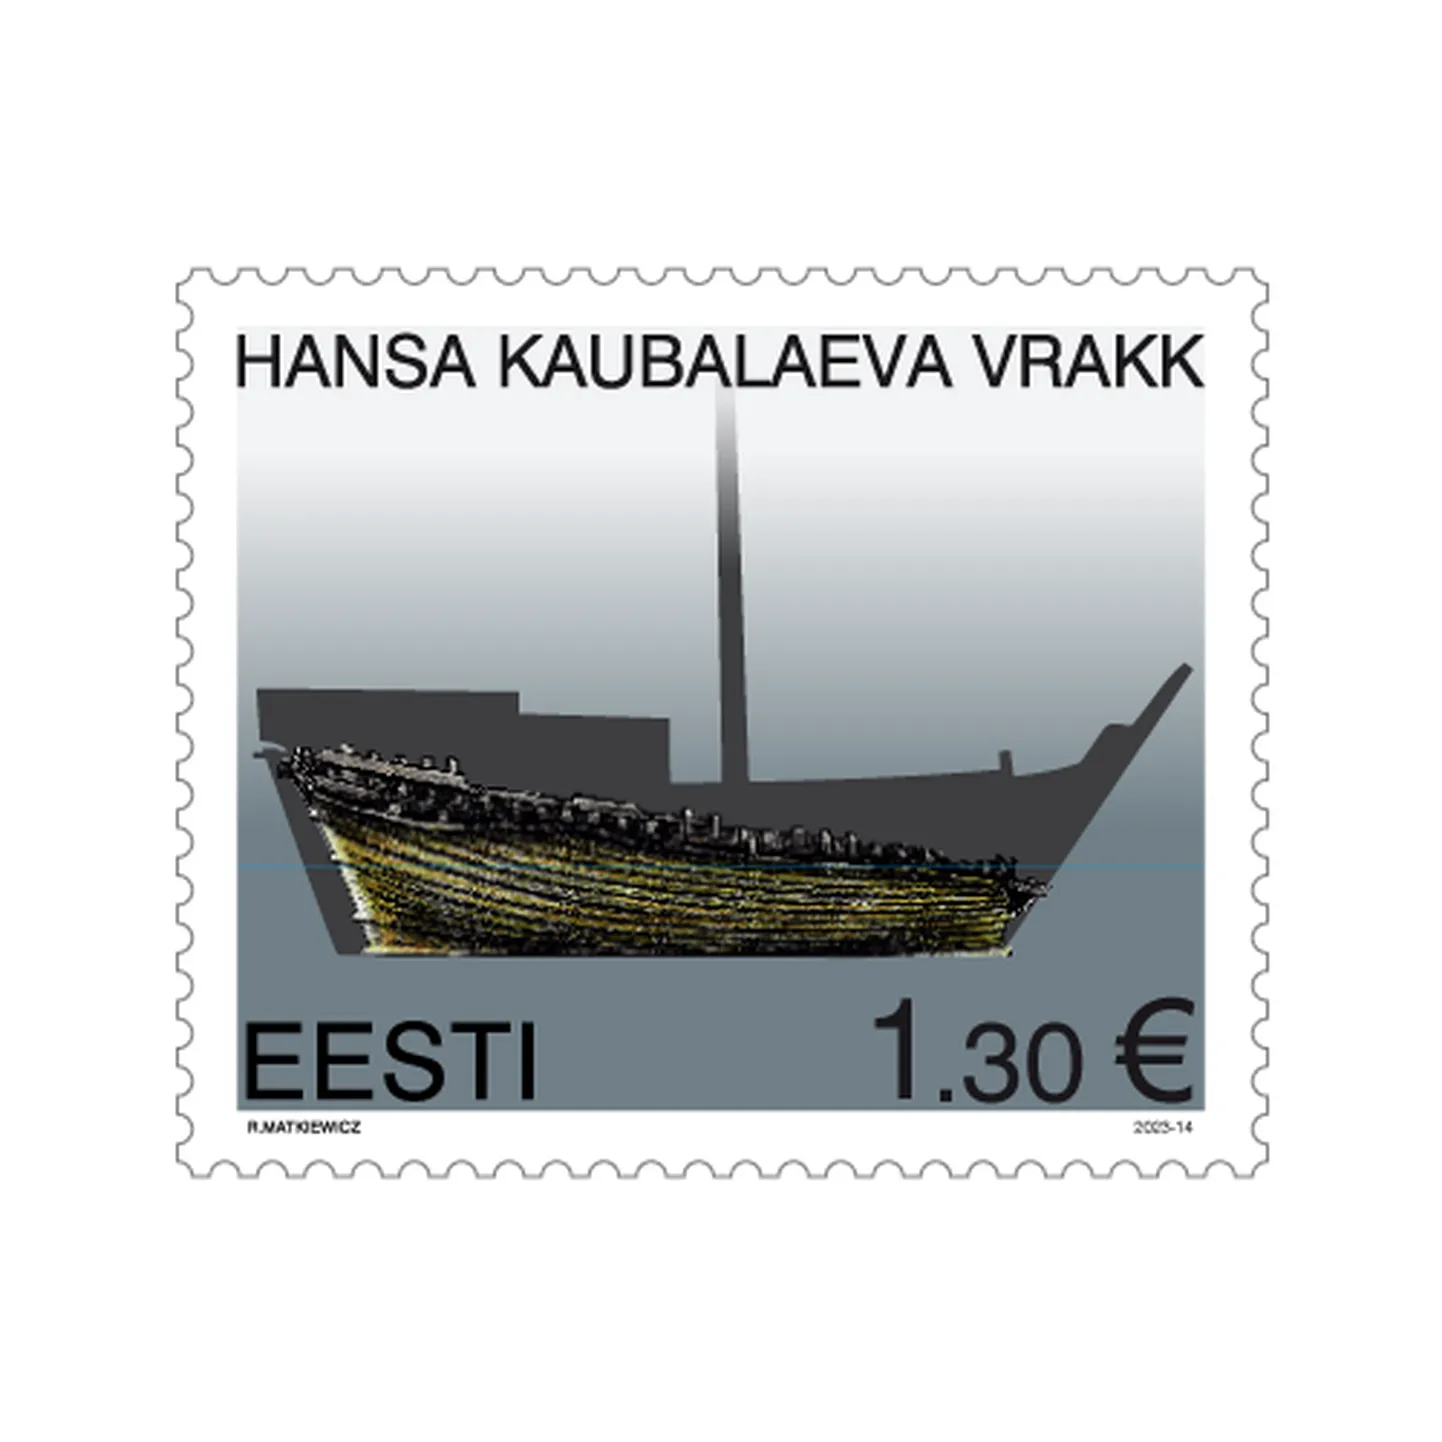 Выходит марка с изображением обломков найденного в Таллинне ганзейского когга.